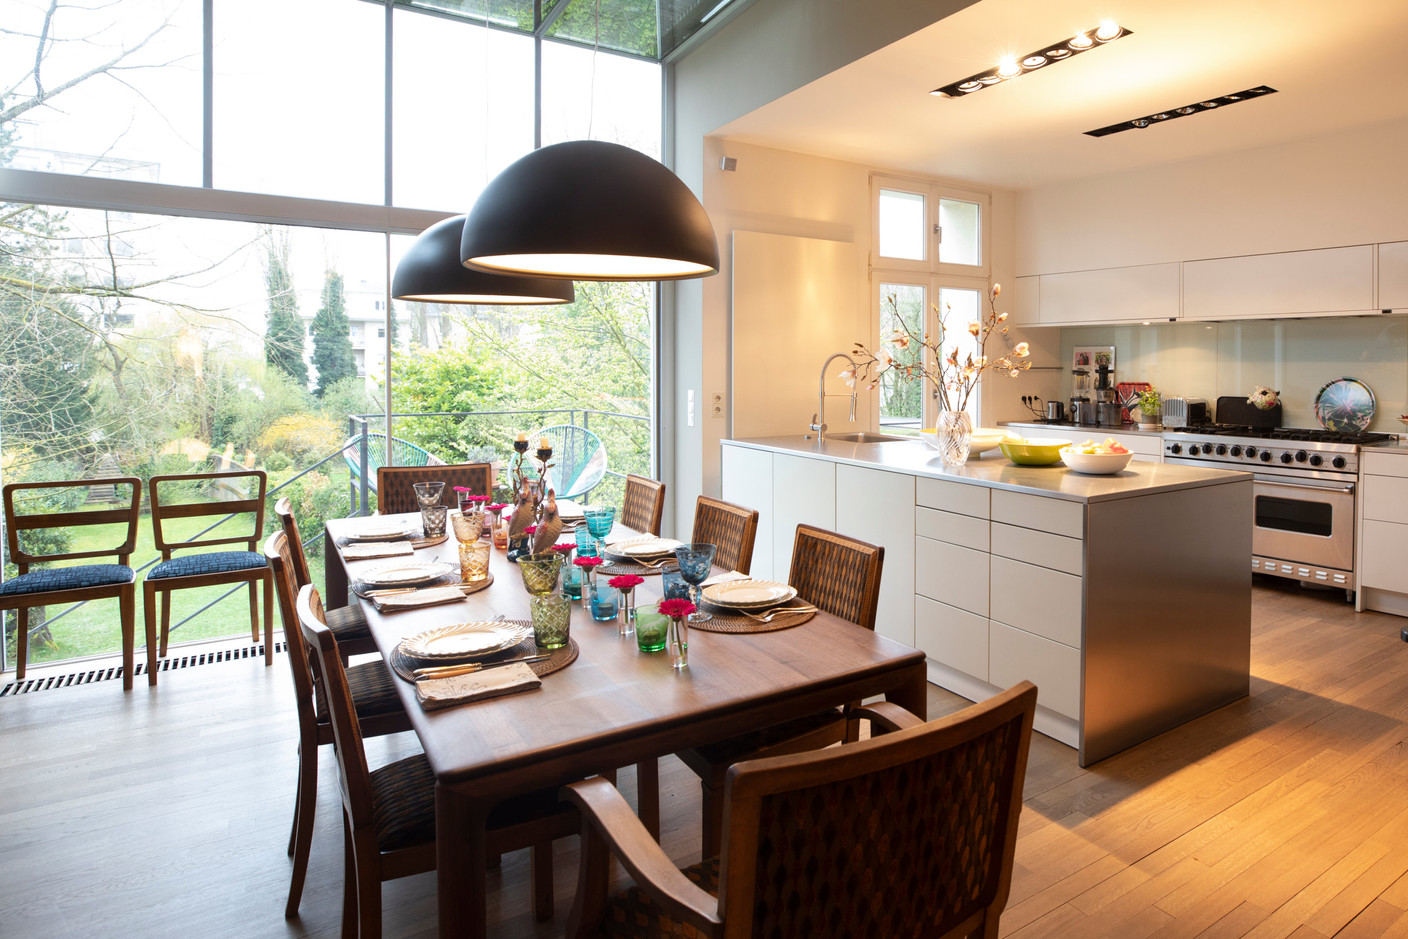 La partie salle à manger est en connexion avec la cuisine ouverte et le jardin. (Photo: Guy Wolff/Maison Moderne)